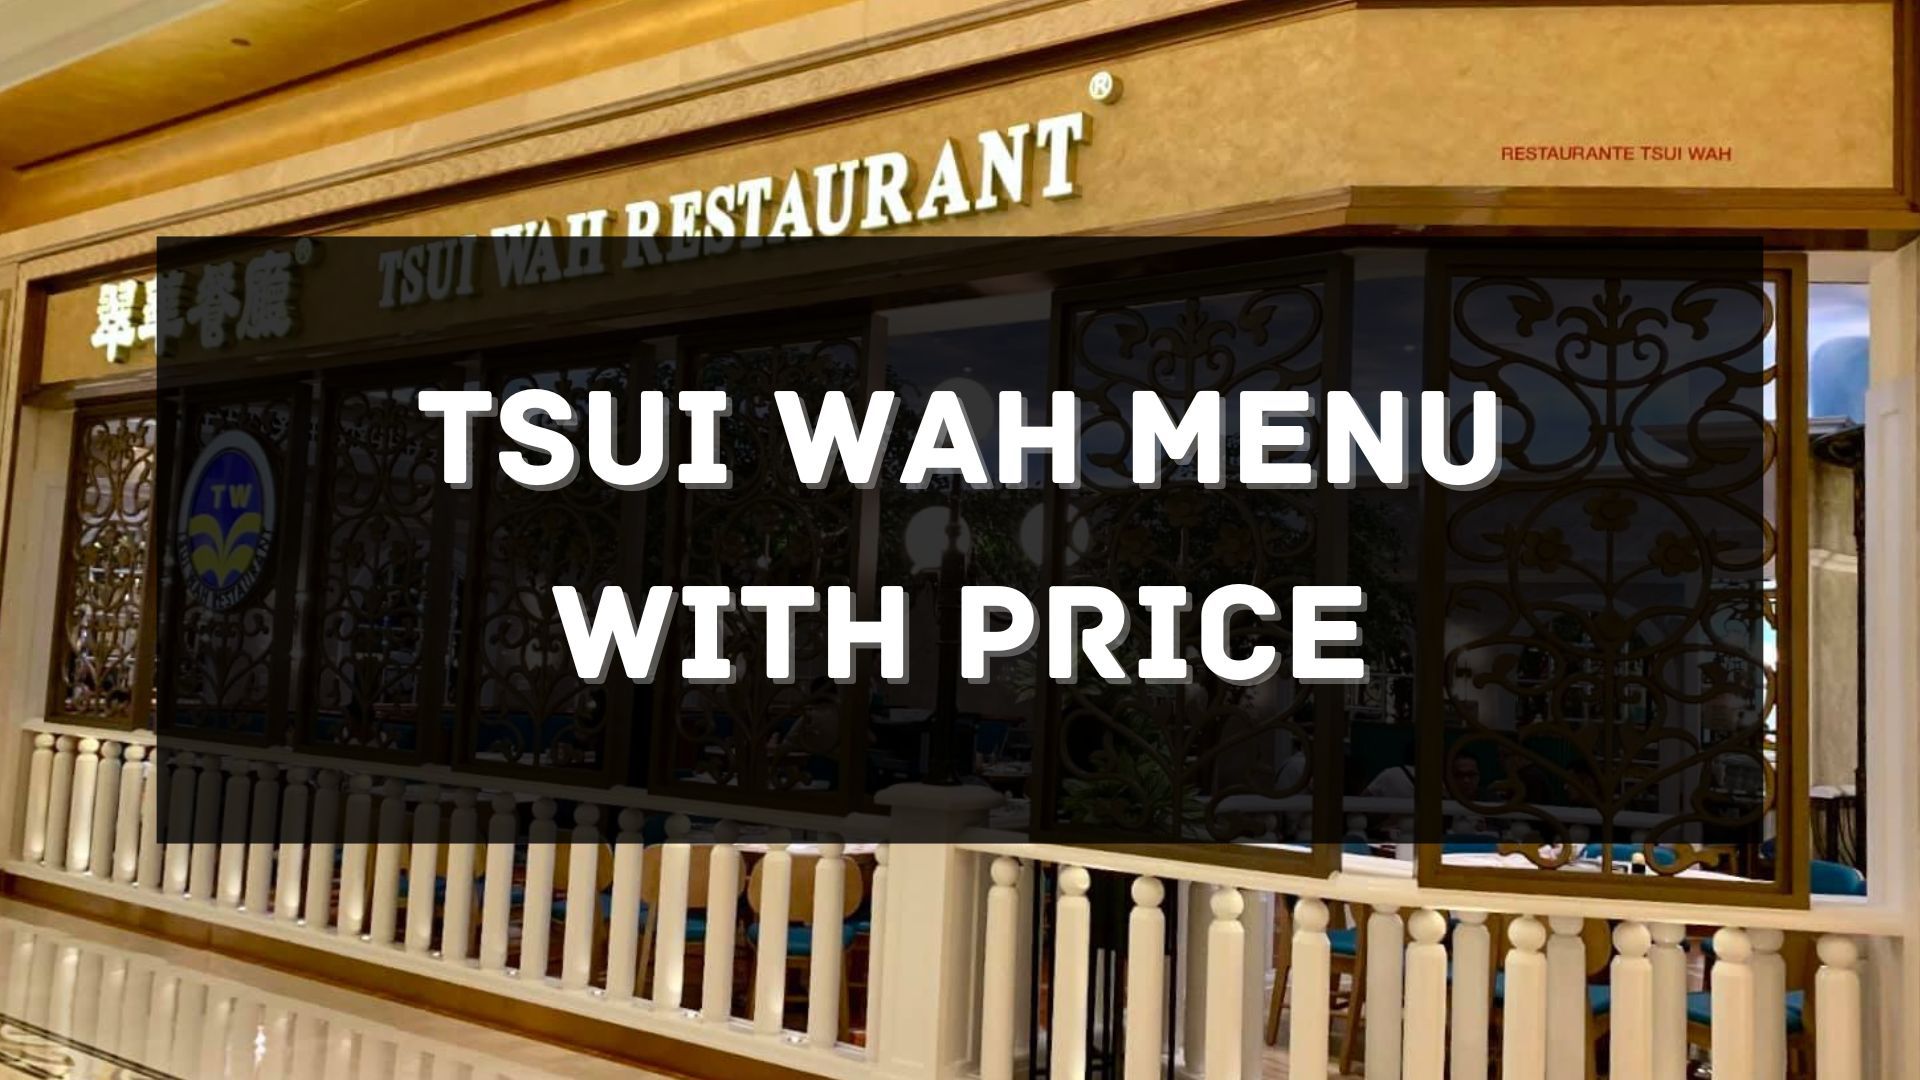 tsui wah menu with price singapore